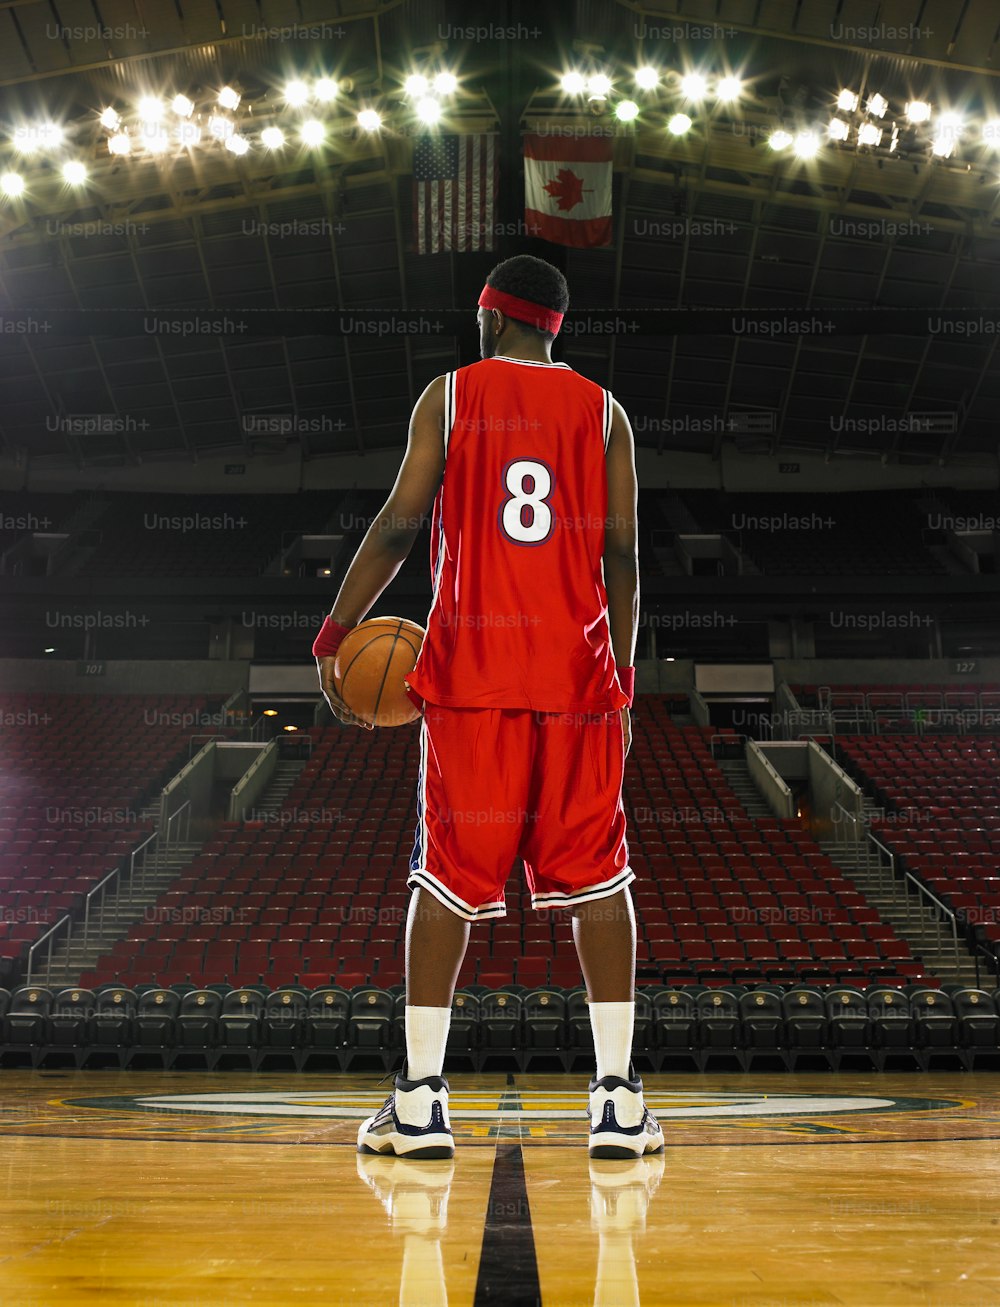 バスケットボールを持つ赤いユニフォームを着たバスケットボール選手